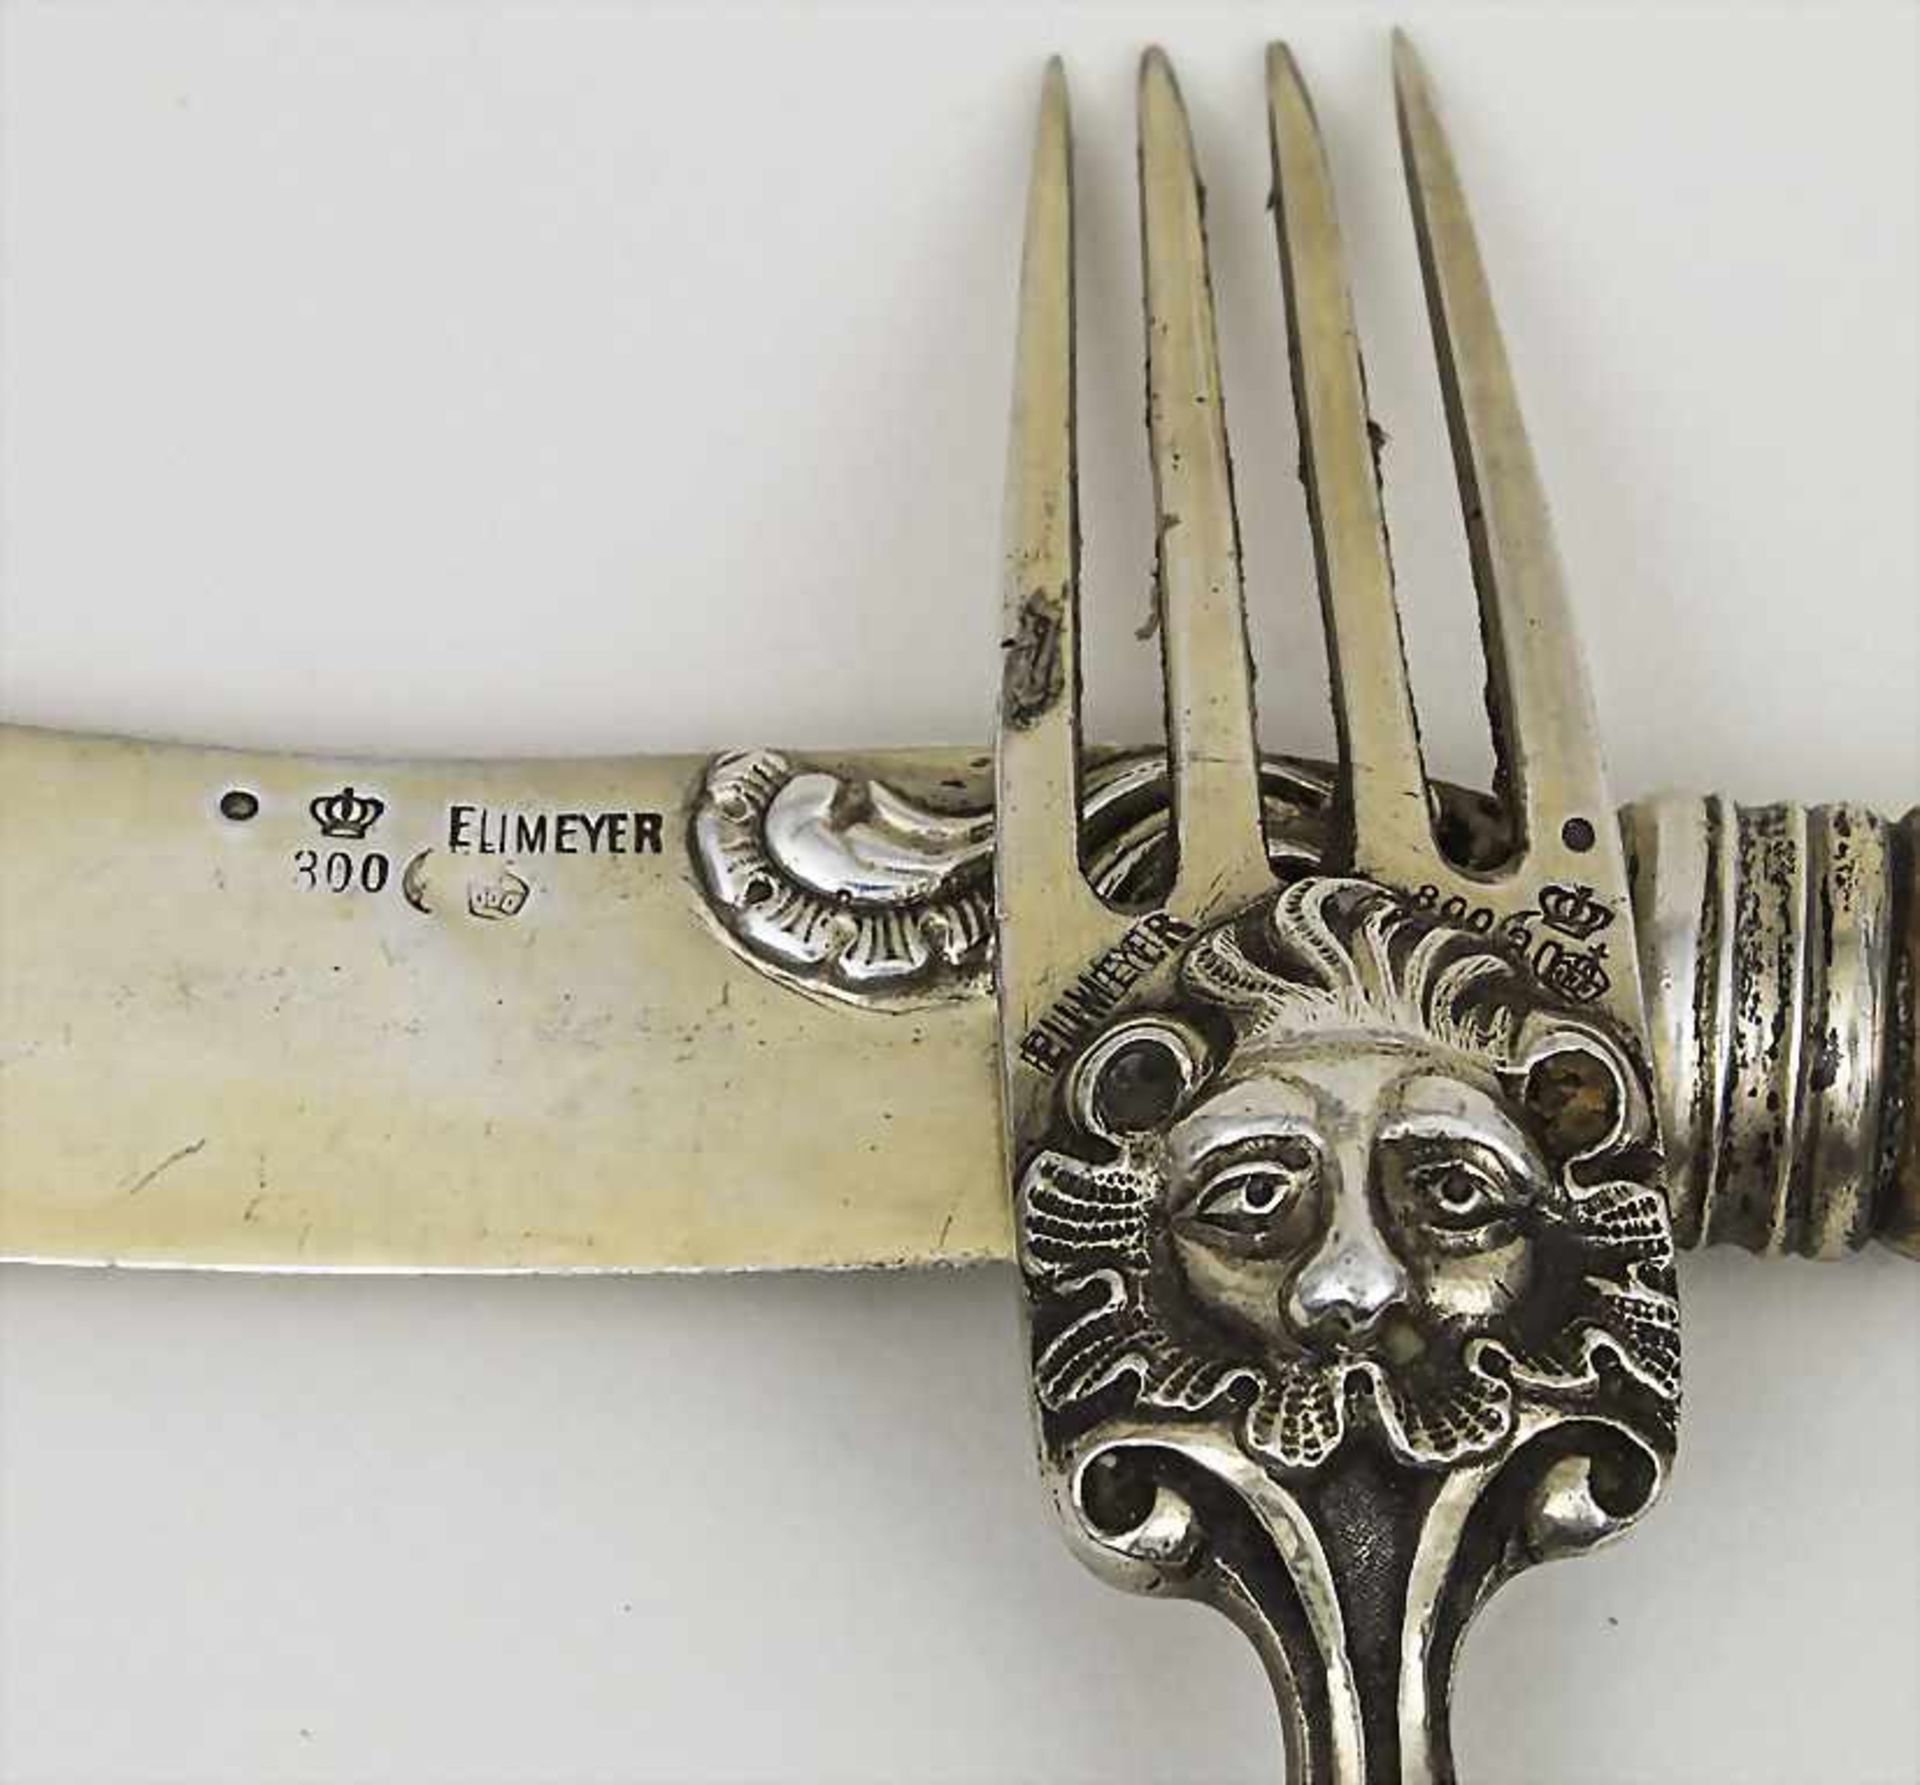 Messer und Gabel mit Kauffahrteiszenen / A knife and fork with porcelain handles, Meissen/Eumeyer, - Image 2 of 2